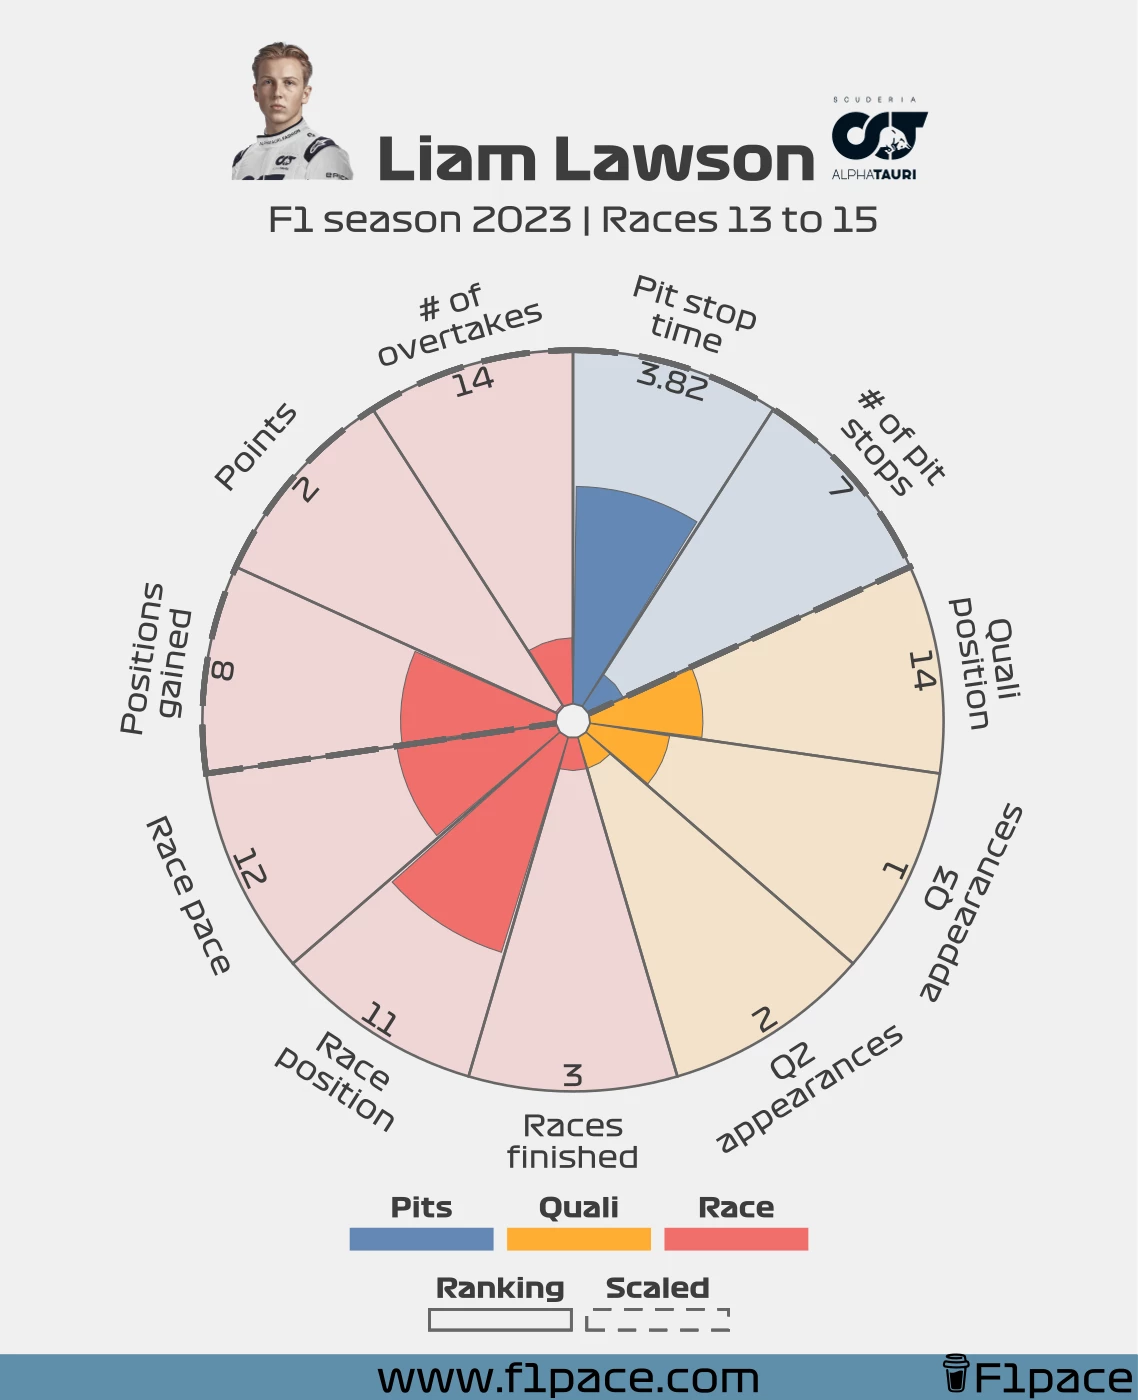 Liam Lawson